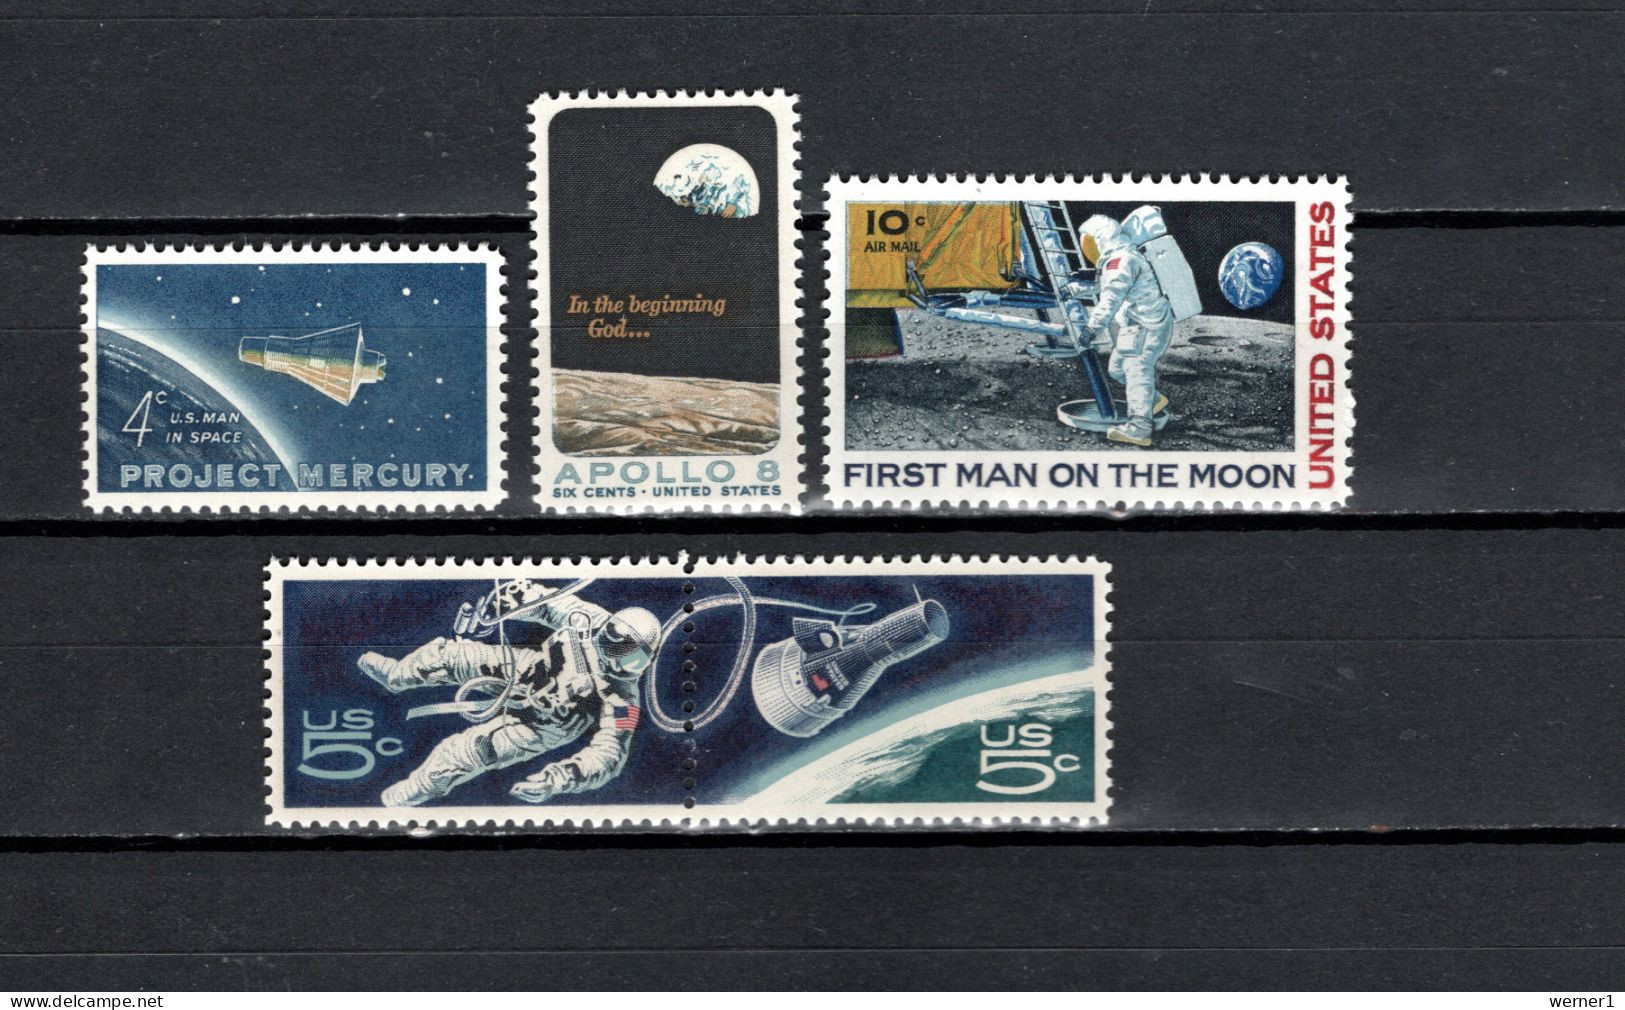 USA 1962/1969 Space, John Glenn, Apollo 8, Apollo 11 Moonlanding, E.H. White 5 Stamps MNH - Estados Unidos